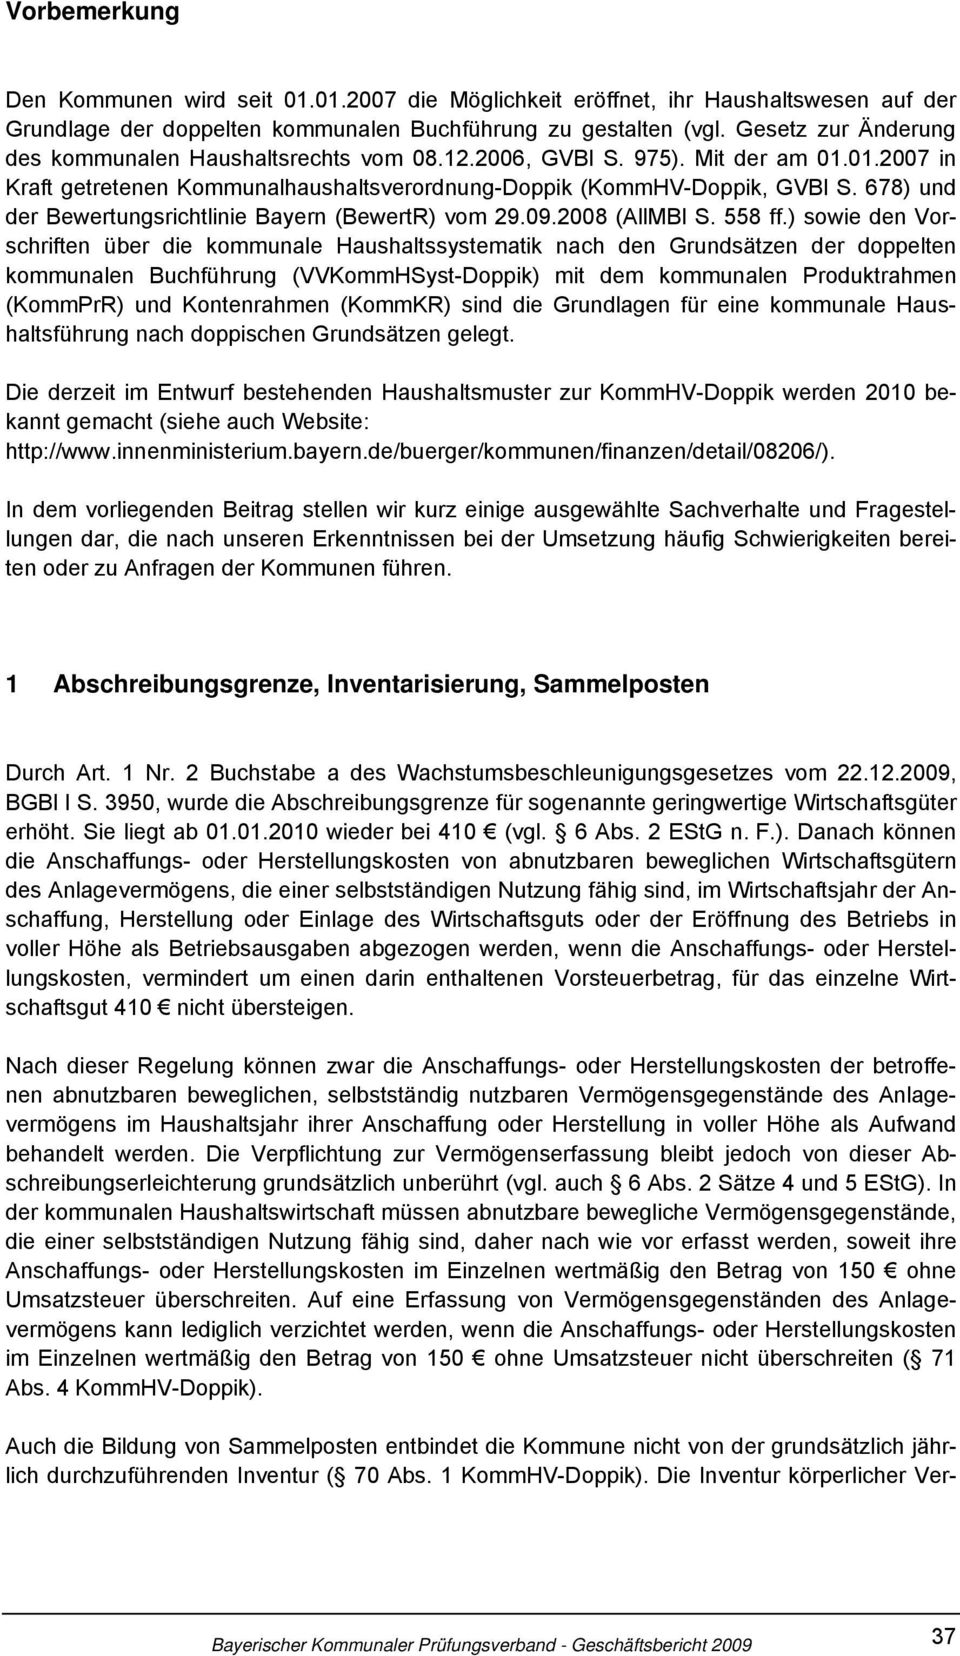 678) und der Bewertungsrichtlinie Bayern (BewertR) vom 29.09.2008 (AllMBl S. 558 ff.